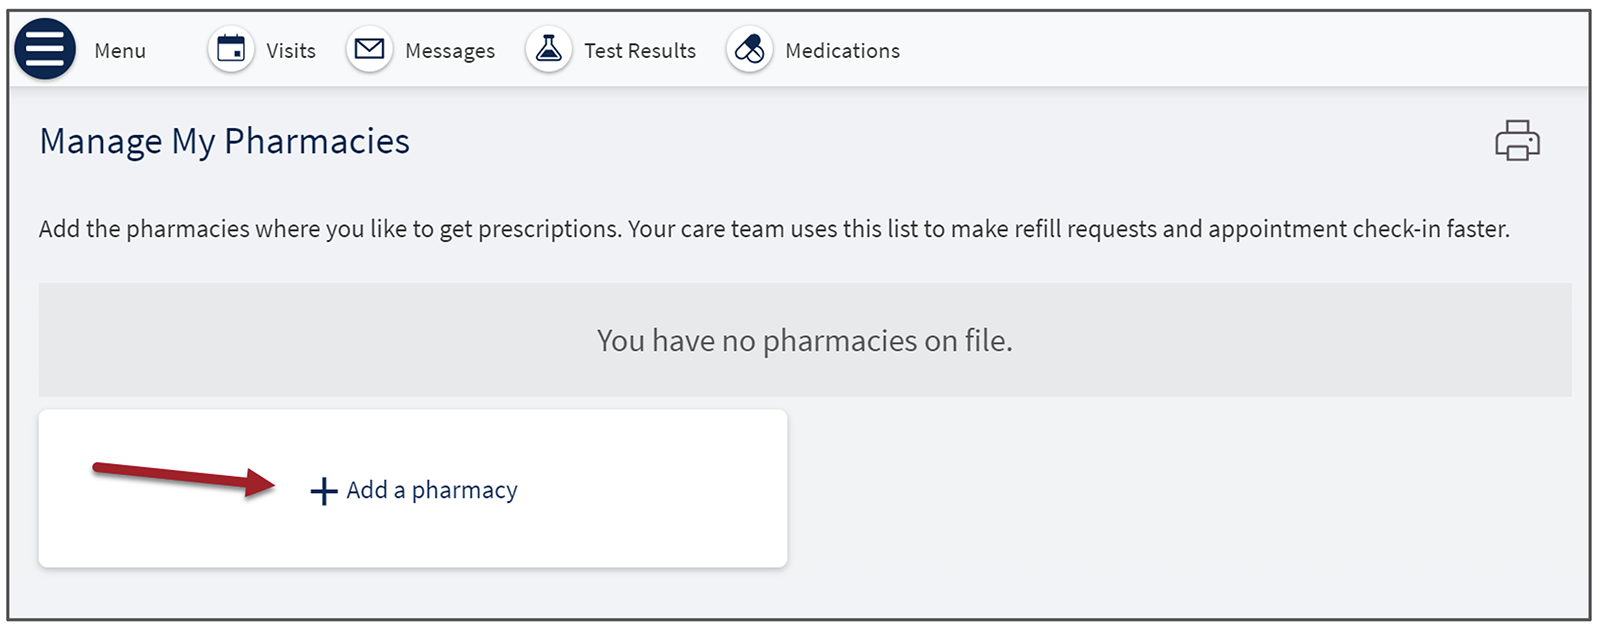 Add a Pharmacy to add a pharmacy